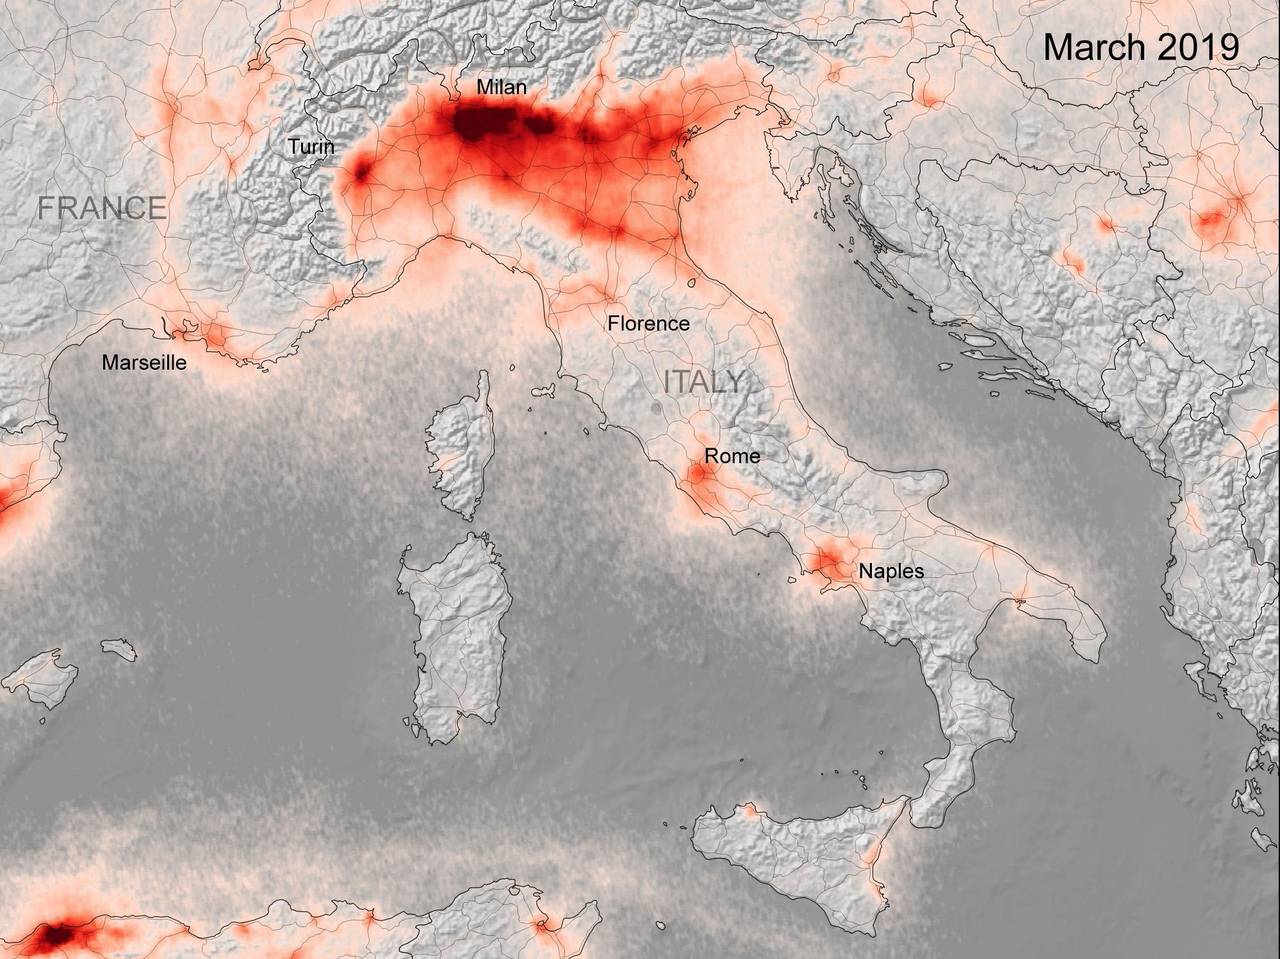 Kart fra ESA som viser konsentrasjonen av NOx-gasser i Italia i mars 2019. 